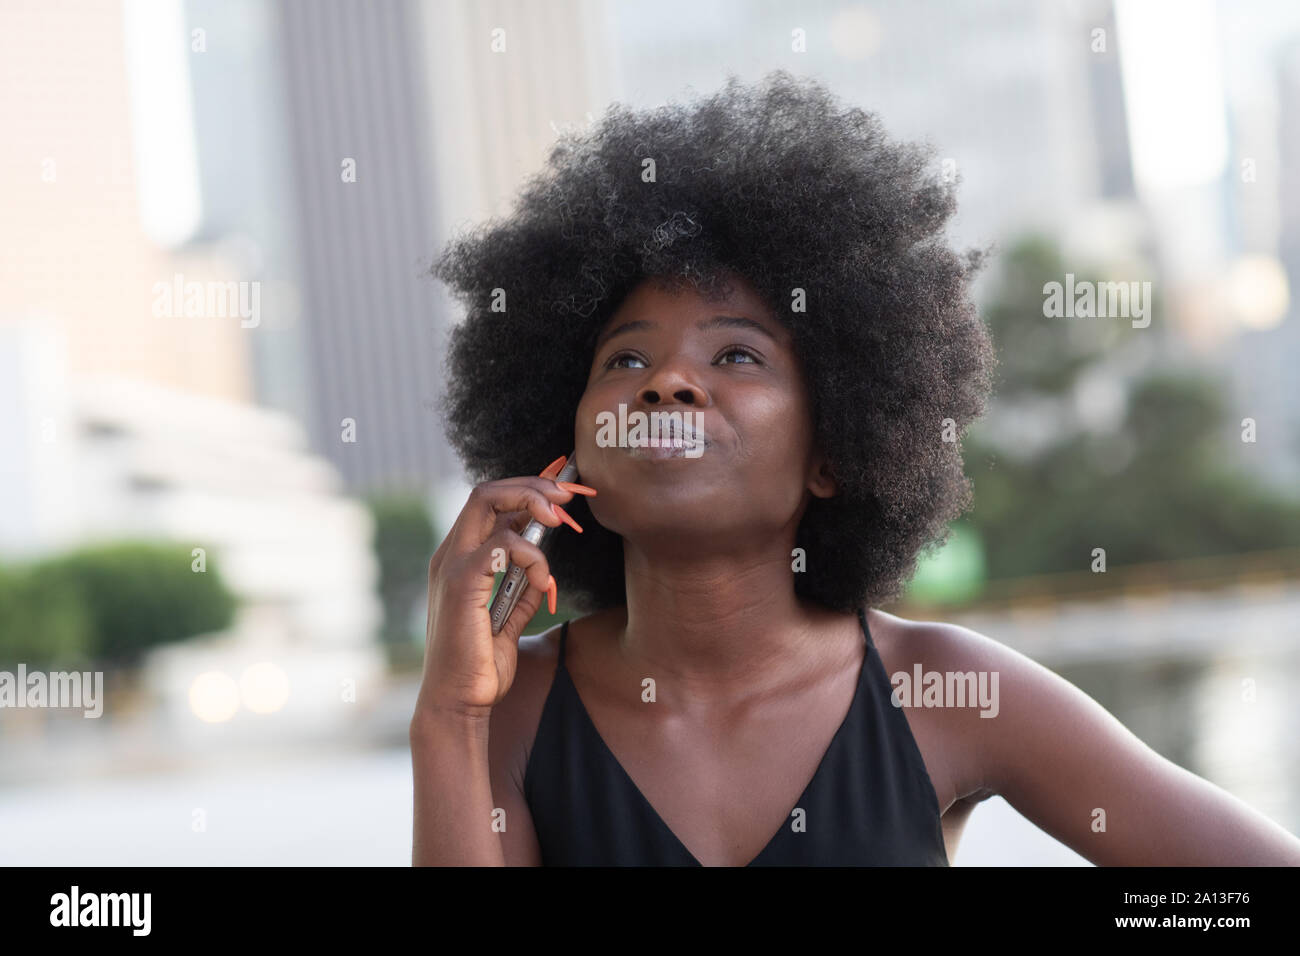 Une pensive African American Woman talking on a cell phone, gratte-ciel sur l'arrière-plan Banque D'Images